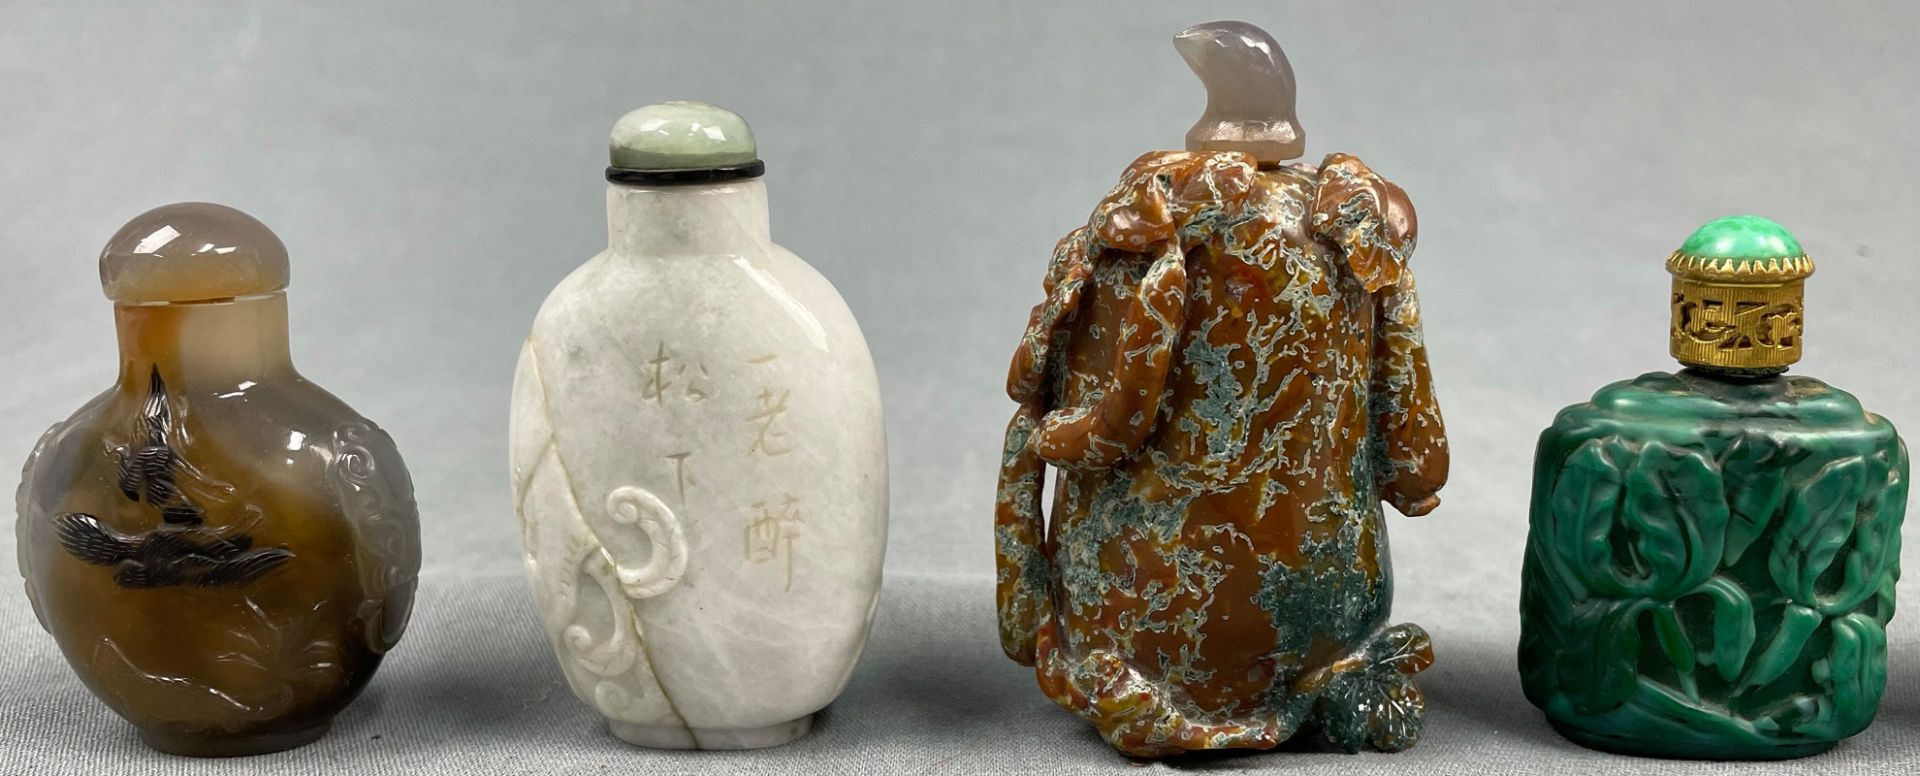 10 feine Snuff Bottles. Wohl China, Japan antik. - Image 5 of 9